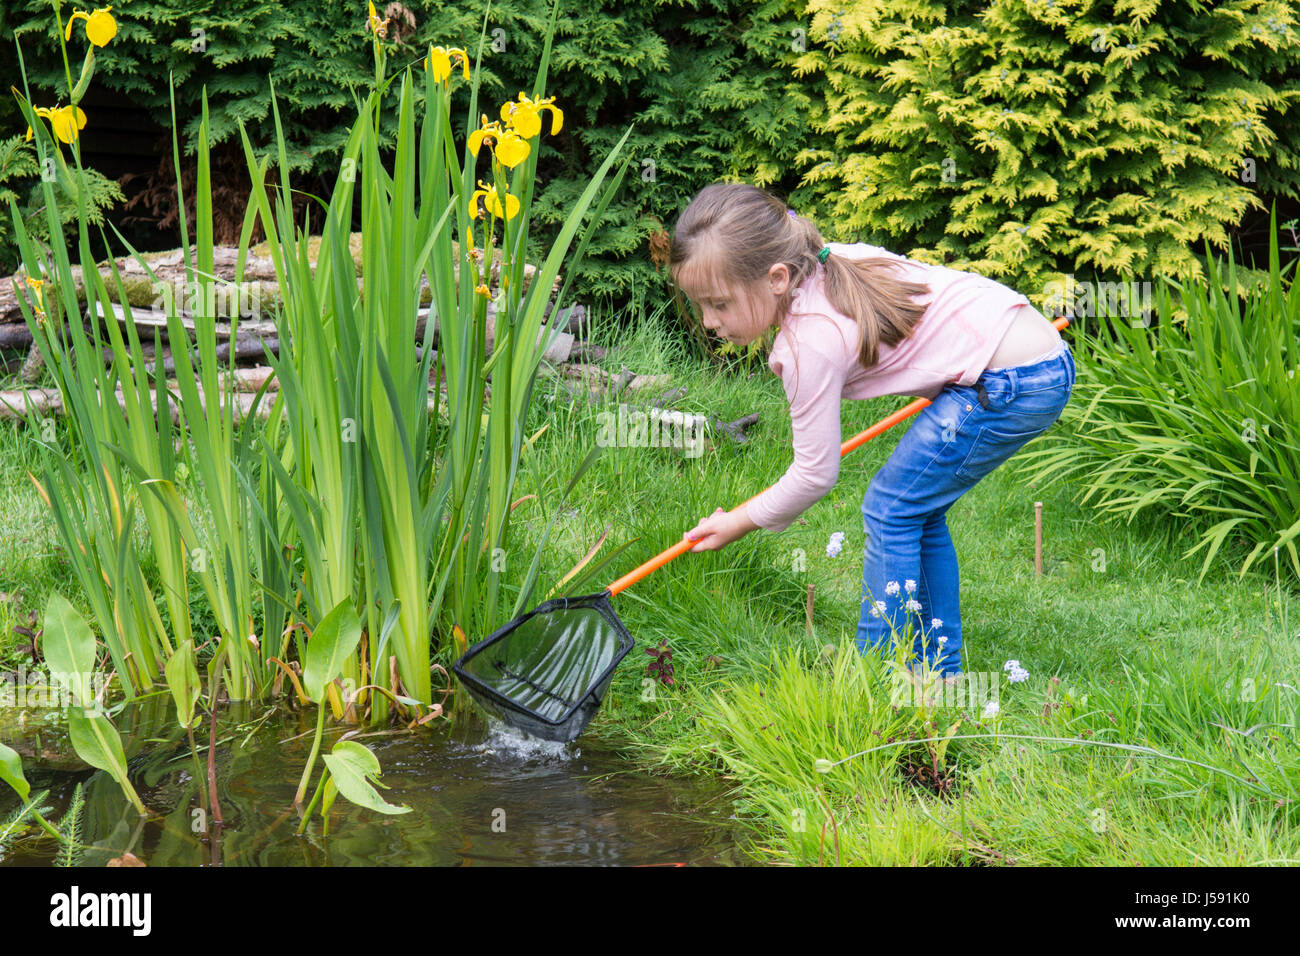 elf Jahre alten Jungen und vier Jahre altes Mädchen Teich eintauchen, Kaulquappen und andere Wildtiere in einem Netz in einem Gartenteich zu fangen versuchen. Sussex, UK. Mai. Stockfoto